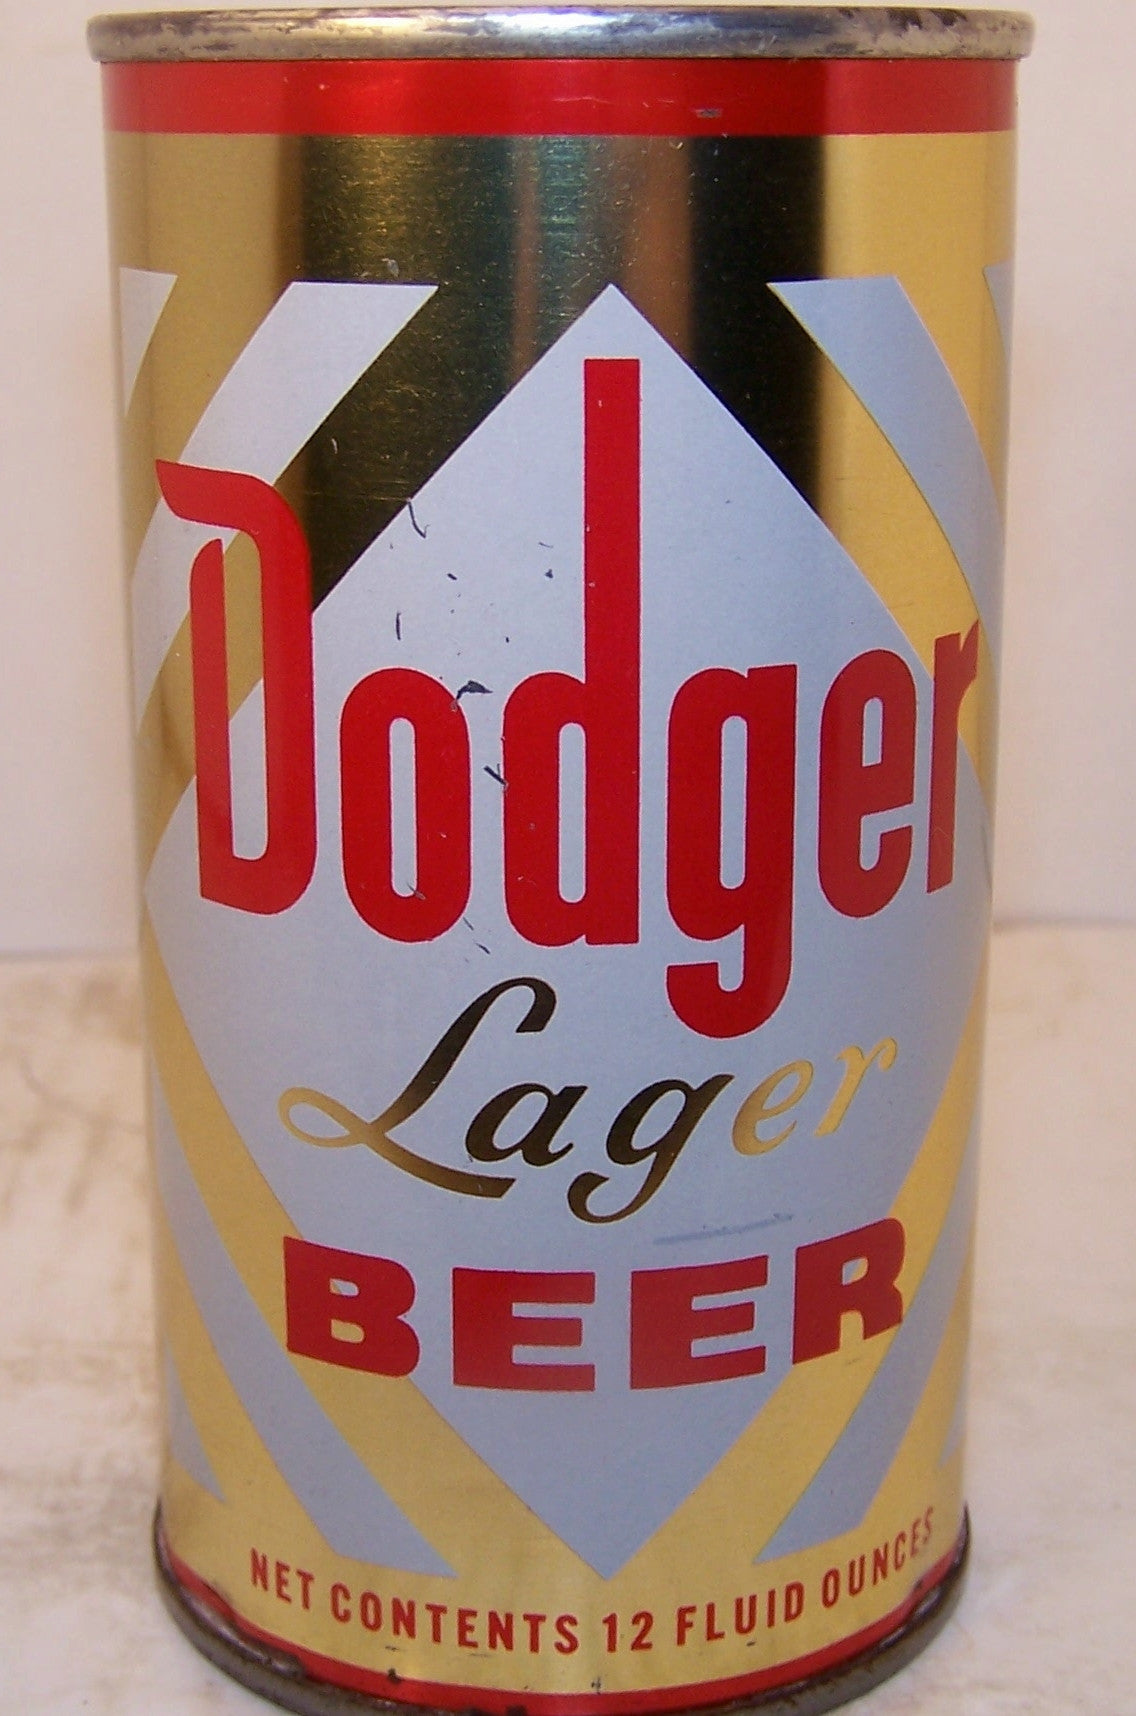 Dodger Lager Beer, USBC 54-17, Grade 1 Sold on 2/14/15